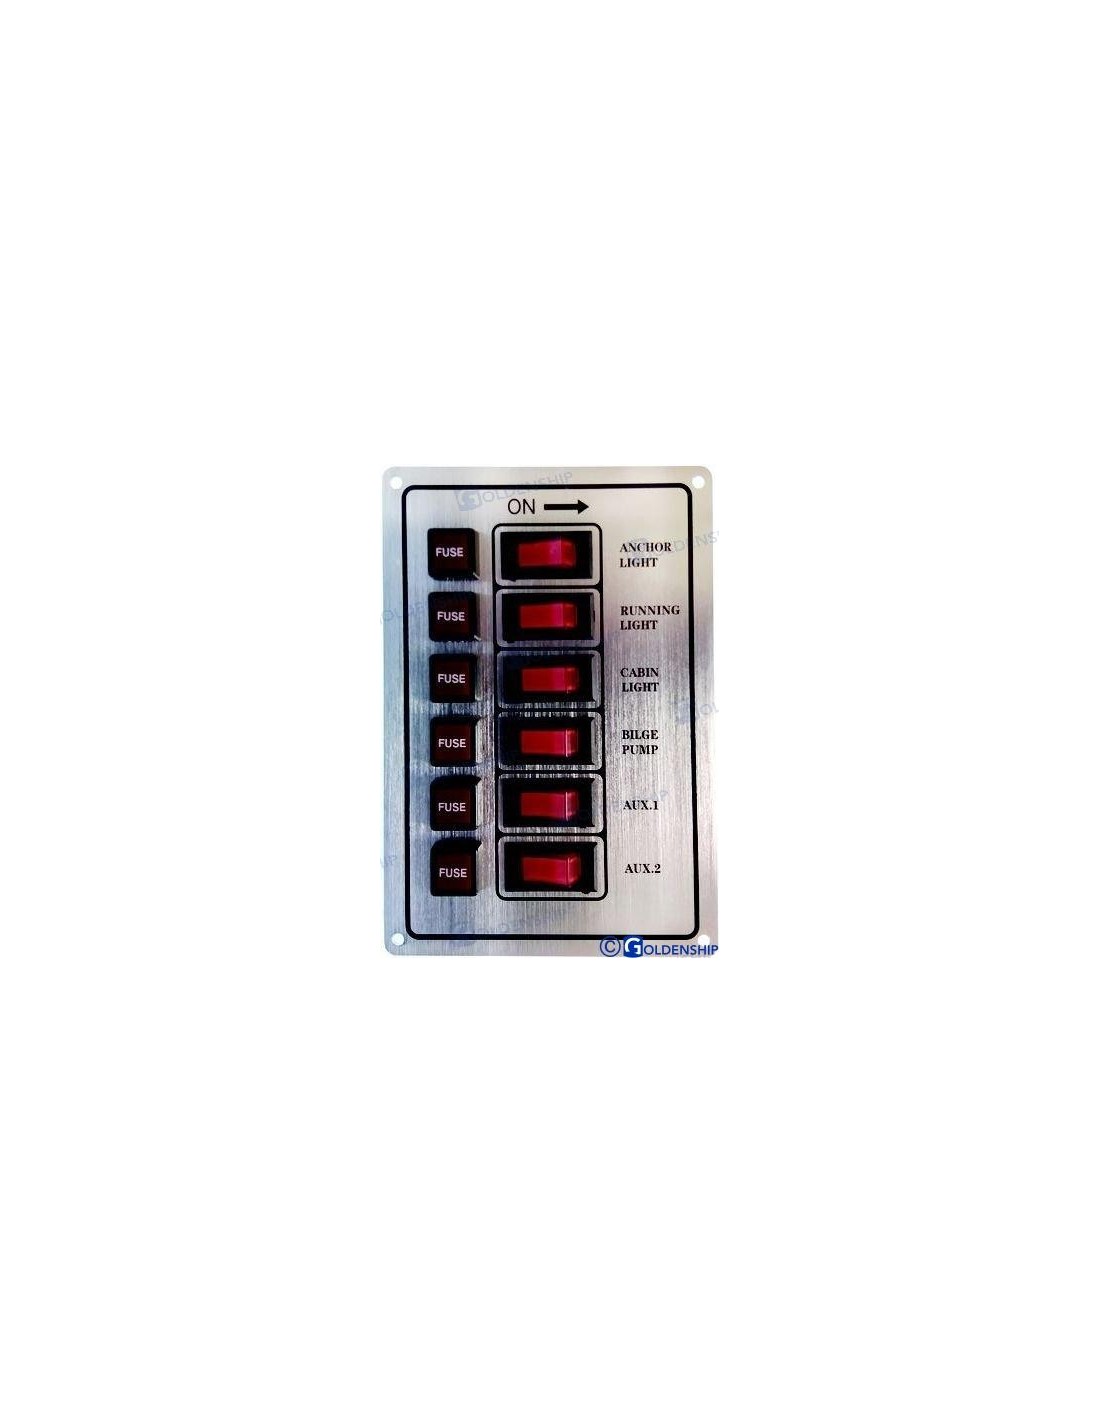 Panel de interruptores basculantes de 6P (blanco), Fabricante de paneles  de interruptores basculantes marinos, fusibles, interruptores de circuito